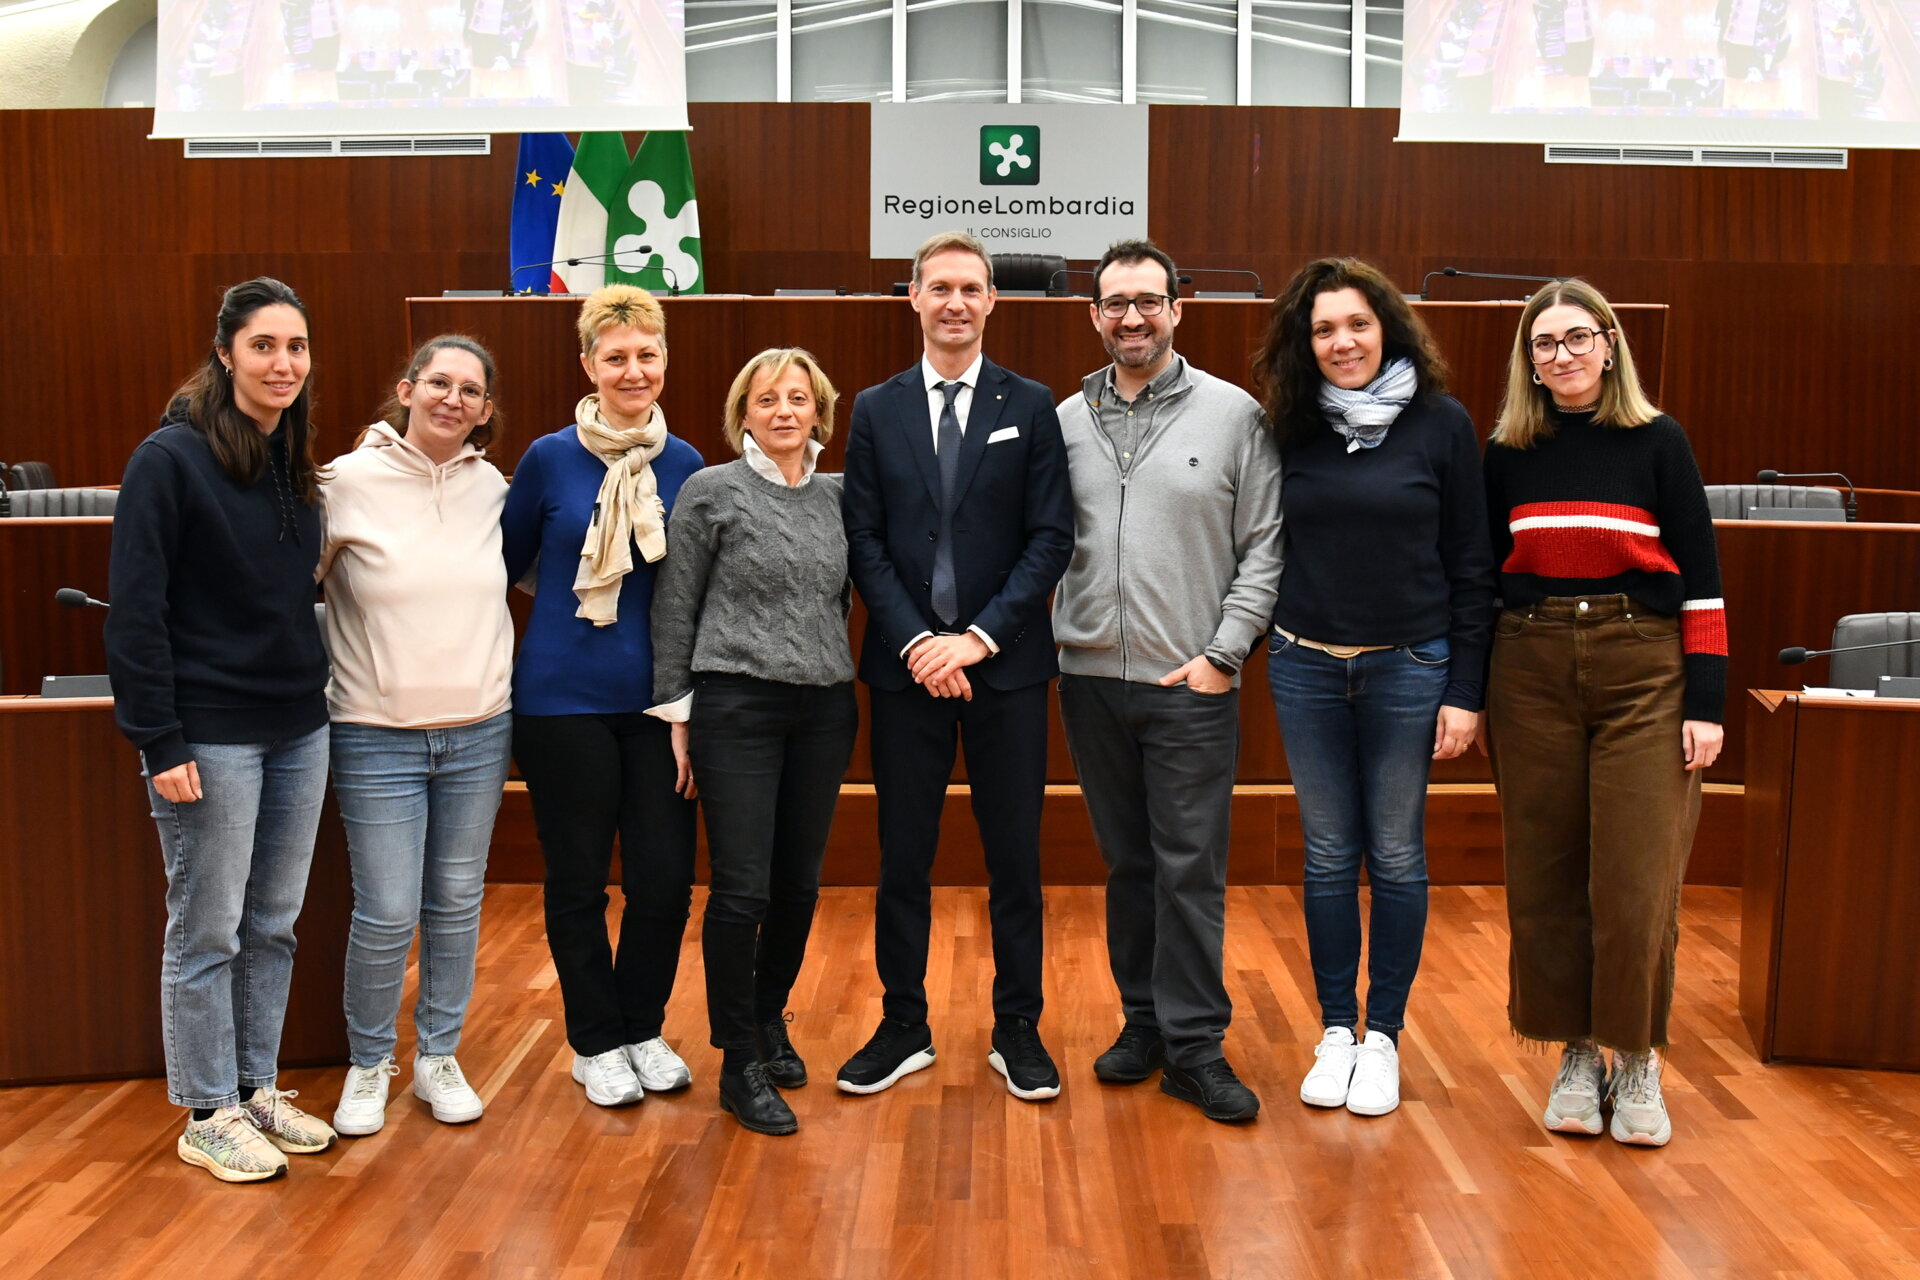 Milano Palazzo Pirelli visita studenti primaria Lesmo con al centro Federico Romani presidente del Consiglio regionale